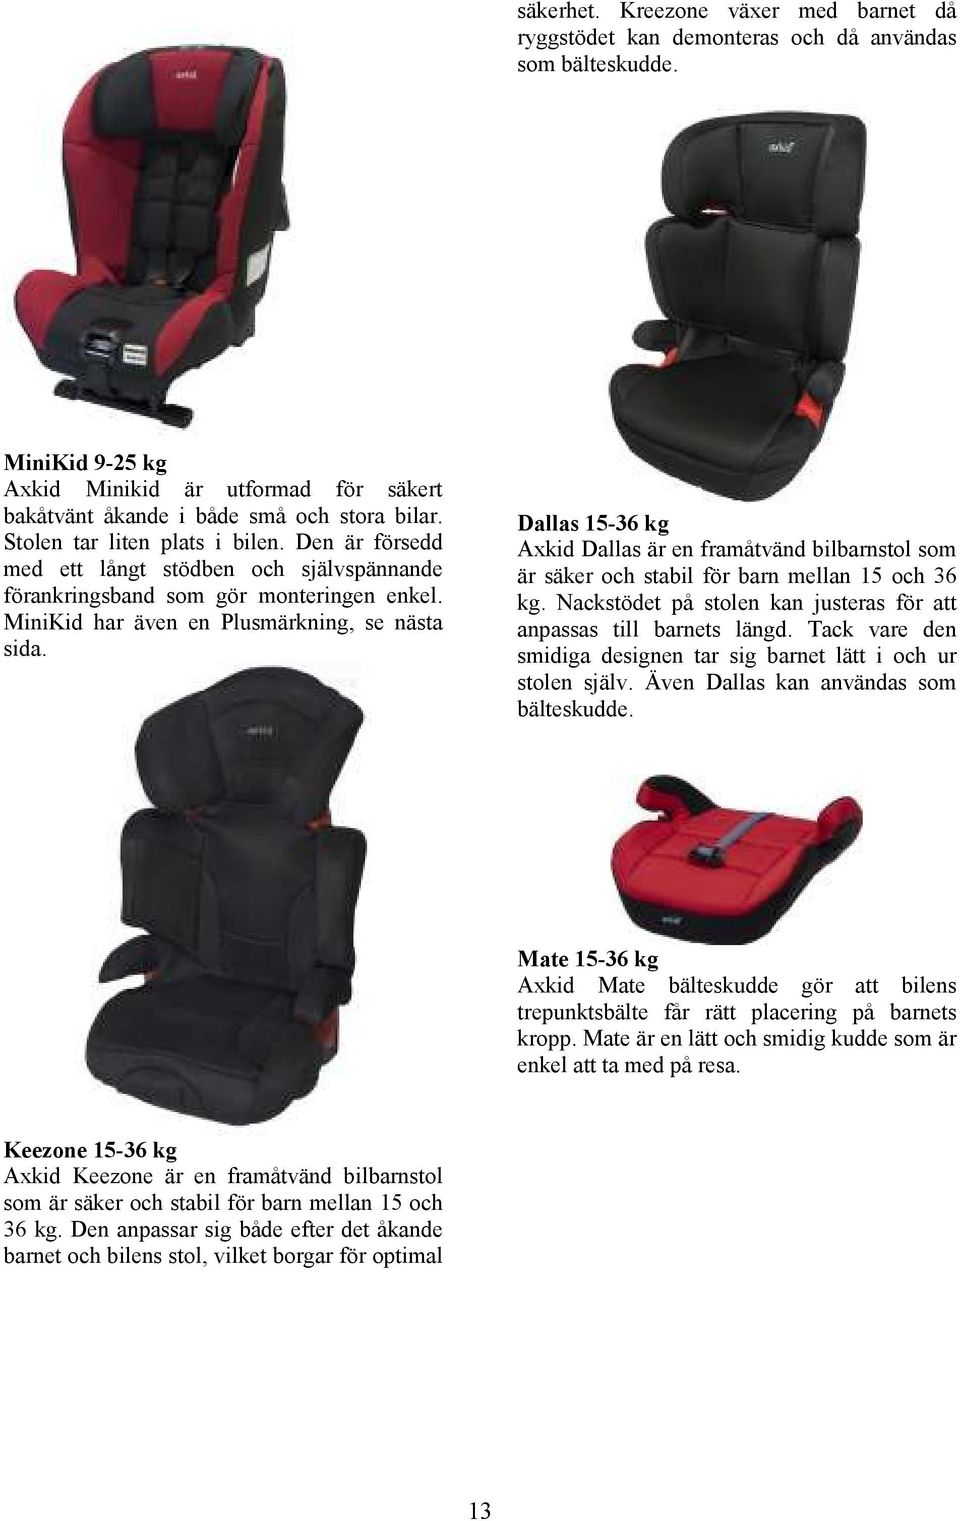 Dallas 15-36 kg Axkid Dallas är en framåtvänd bilbarnstol som är säker och stabil för barn mellan 15 och 36 kg. Nackstödet på stolen kan justeras för att anpassas till barnets längd.